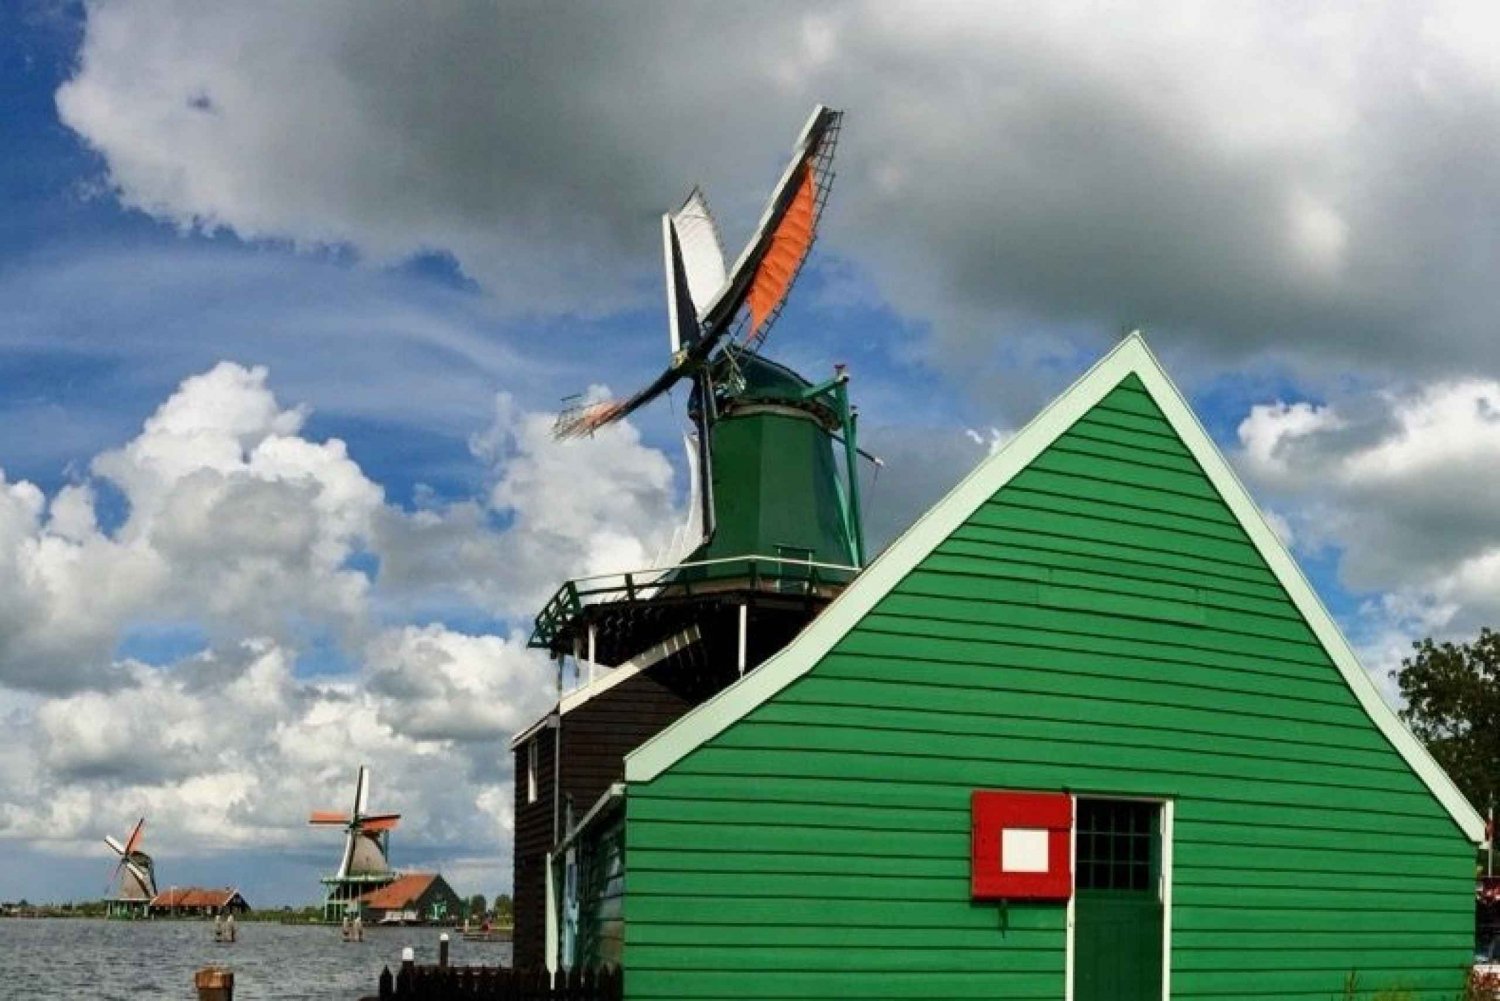 Villages & Windmills Zaanse Schans Small Group Tour